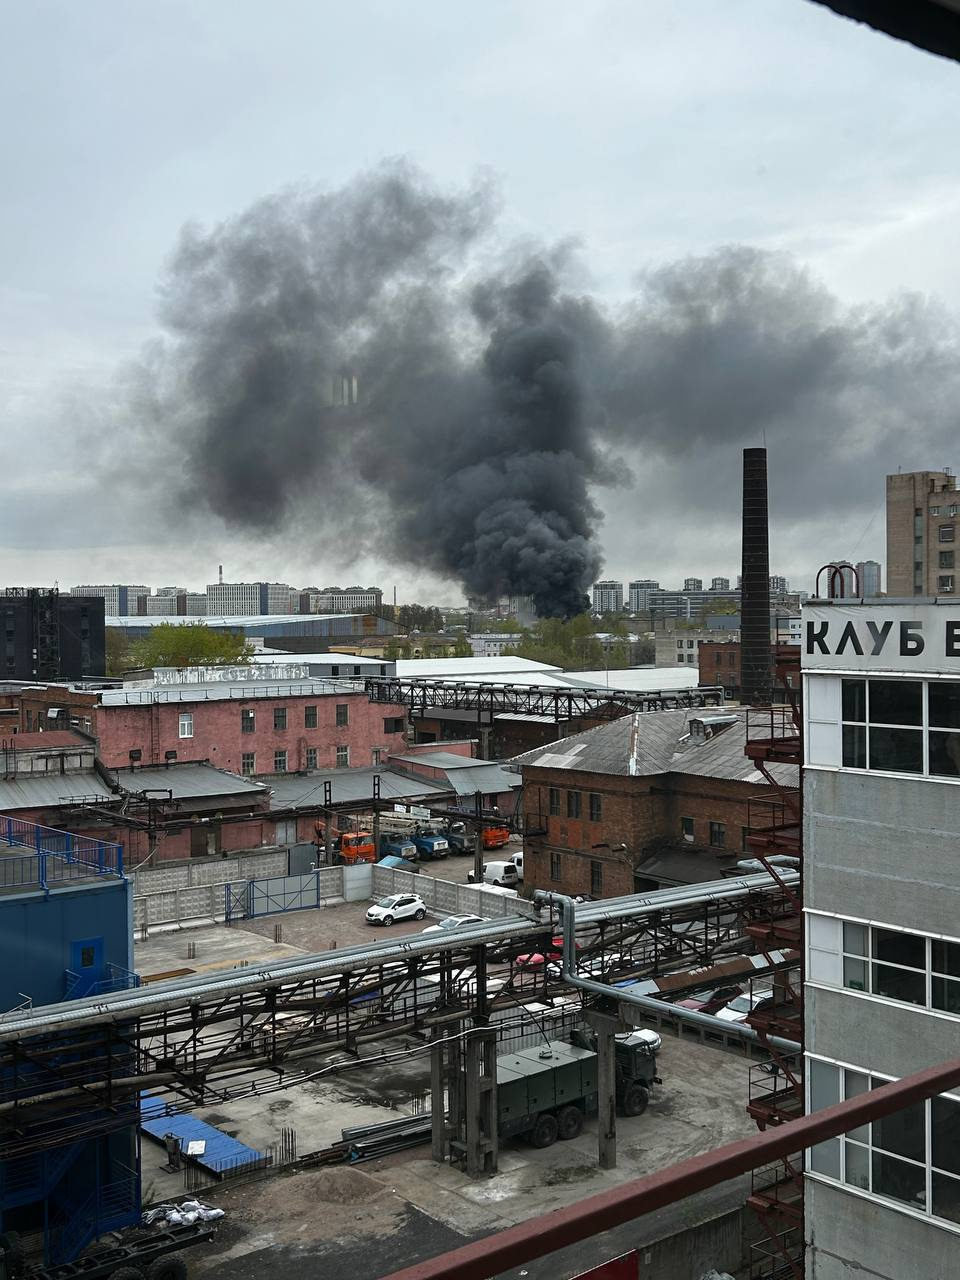 Пожар, затянувший черным дымом юго-запад Петербурга, потушили